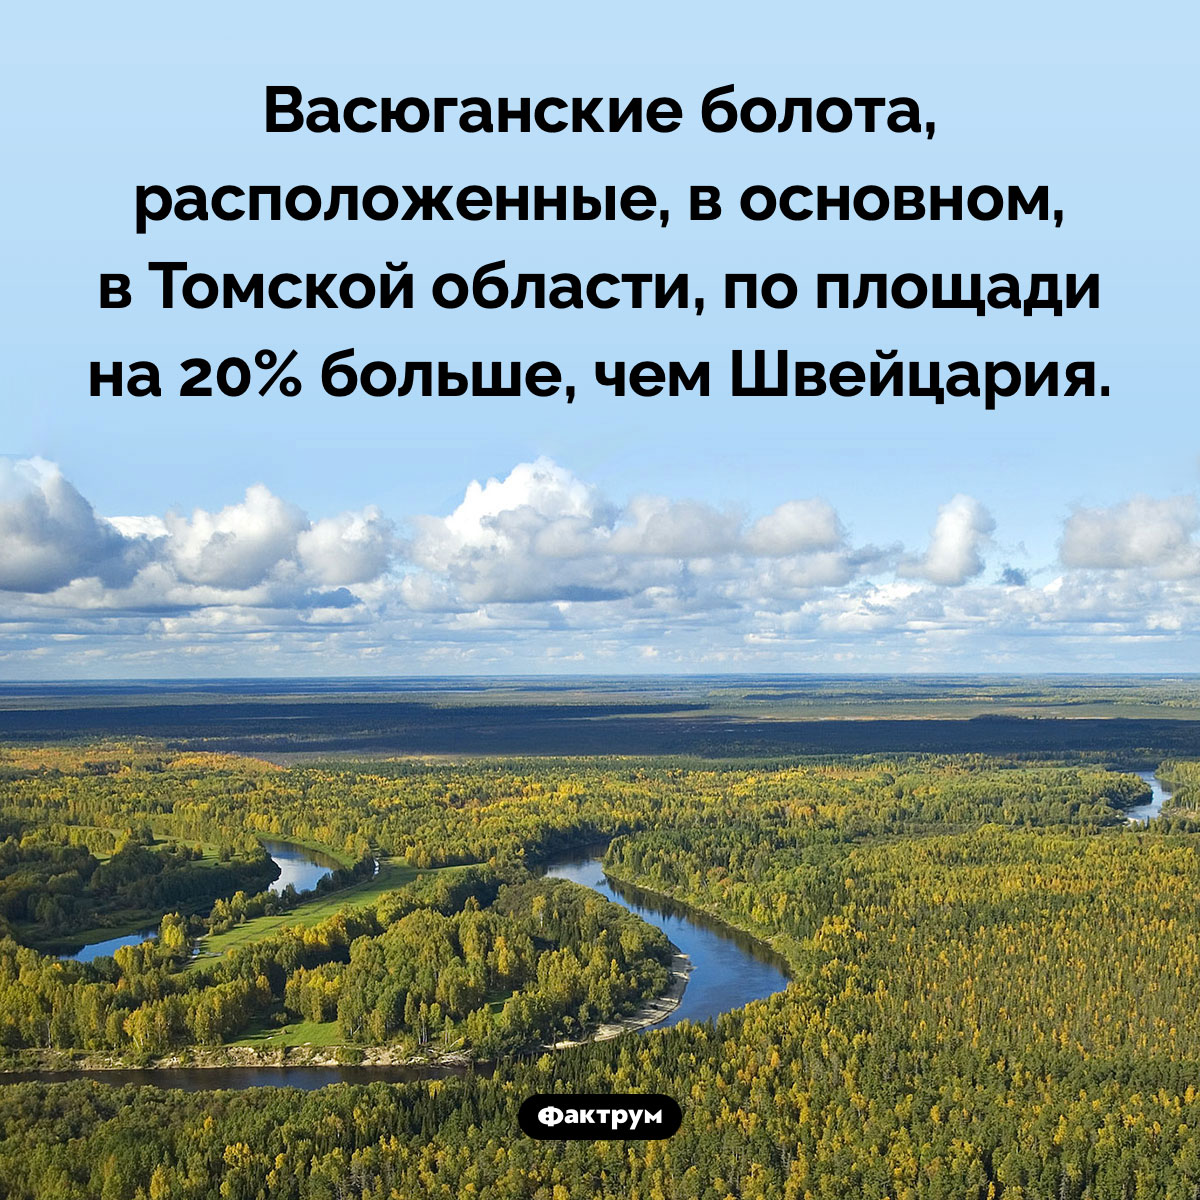 Васюганские болота больше Швейцарии. Васюганские болота, расположенные, в основном, в Томской области, по площади на 20% больше, чем Швейцария.